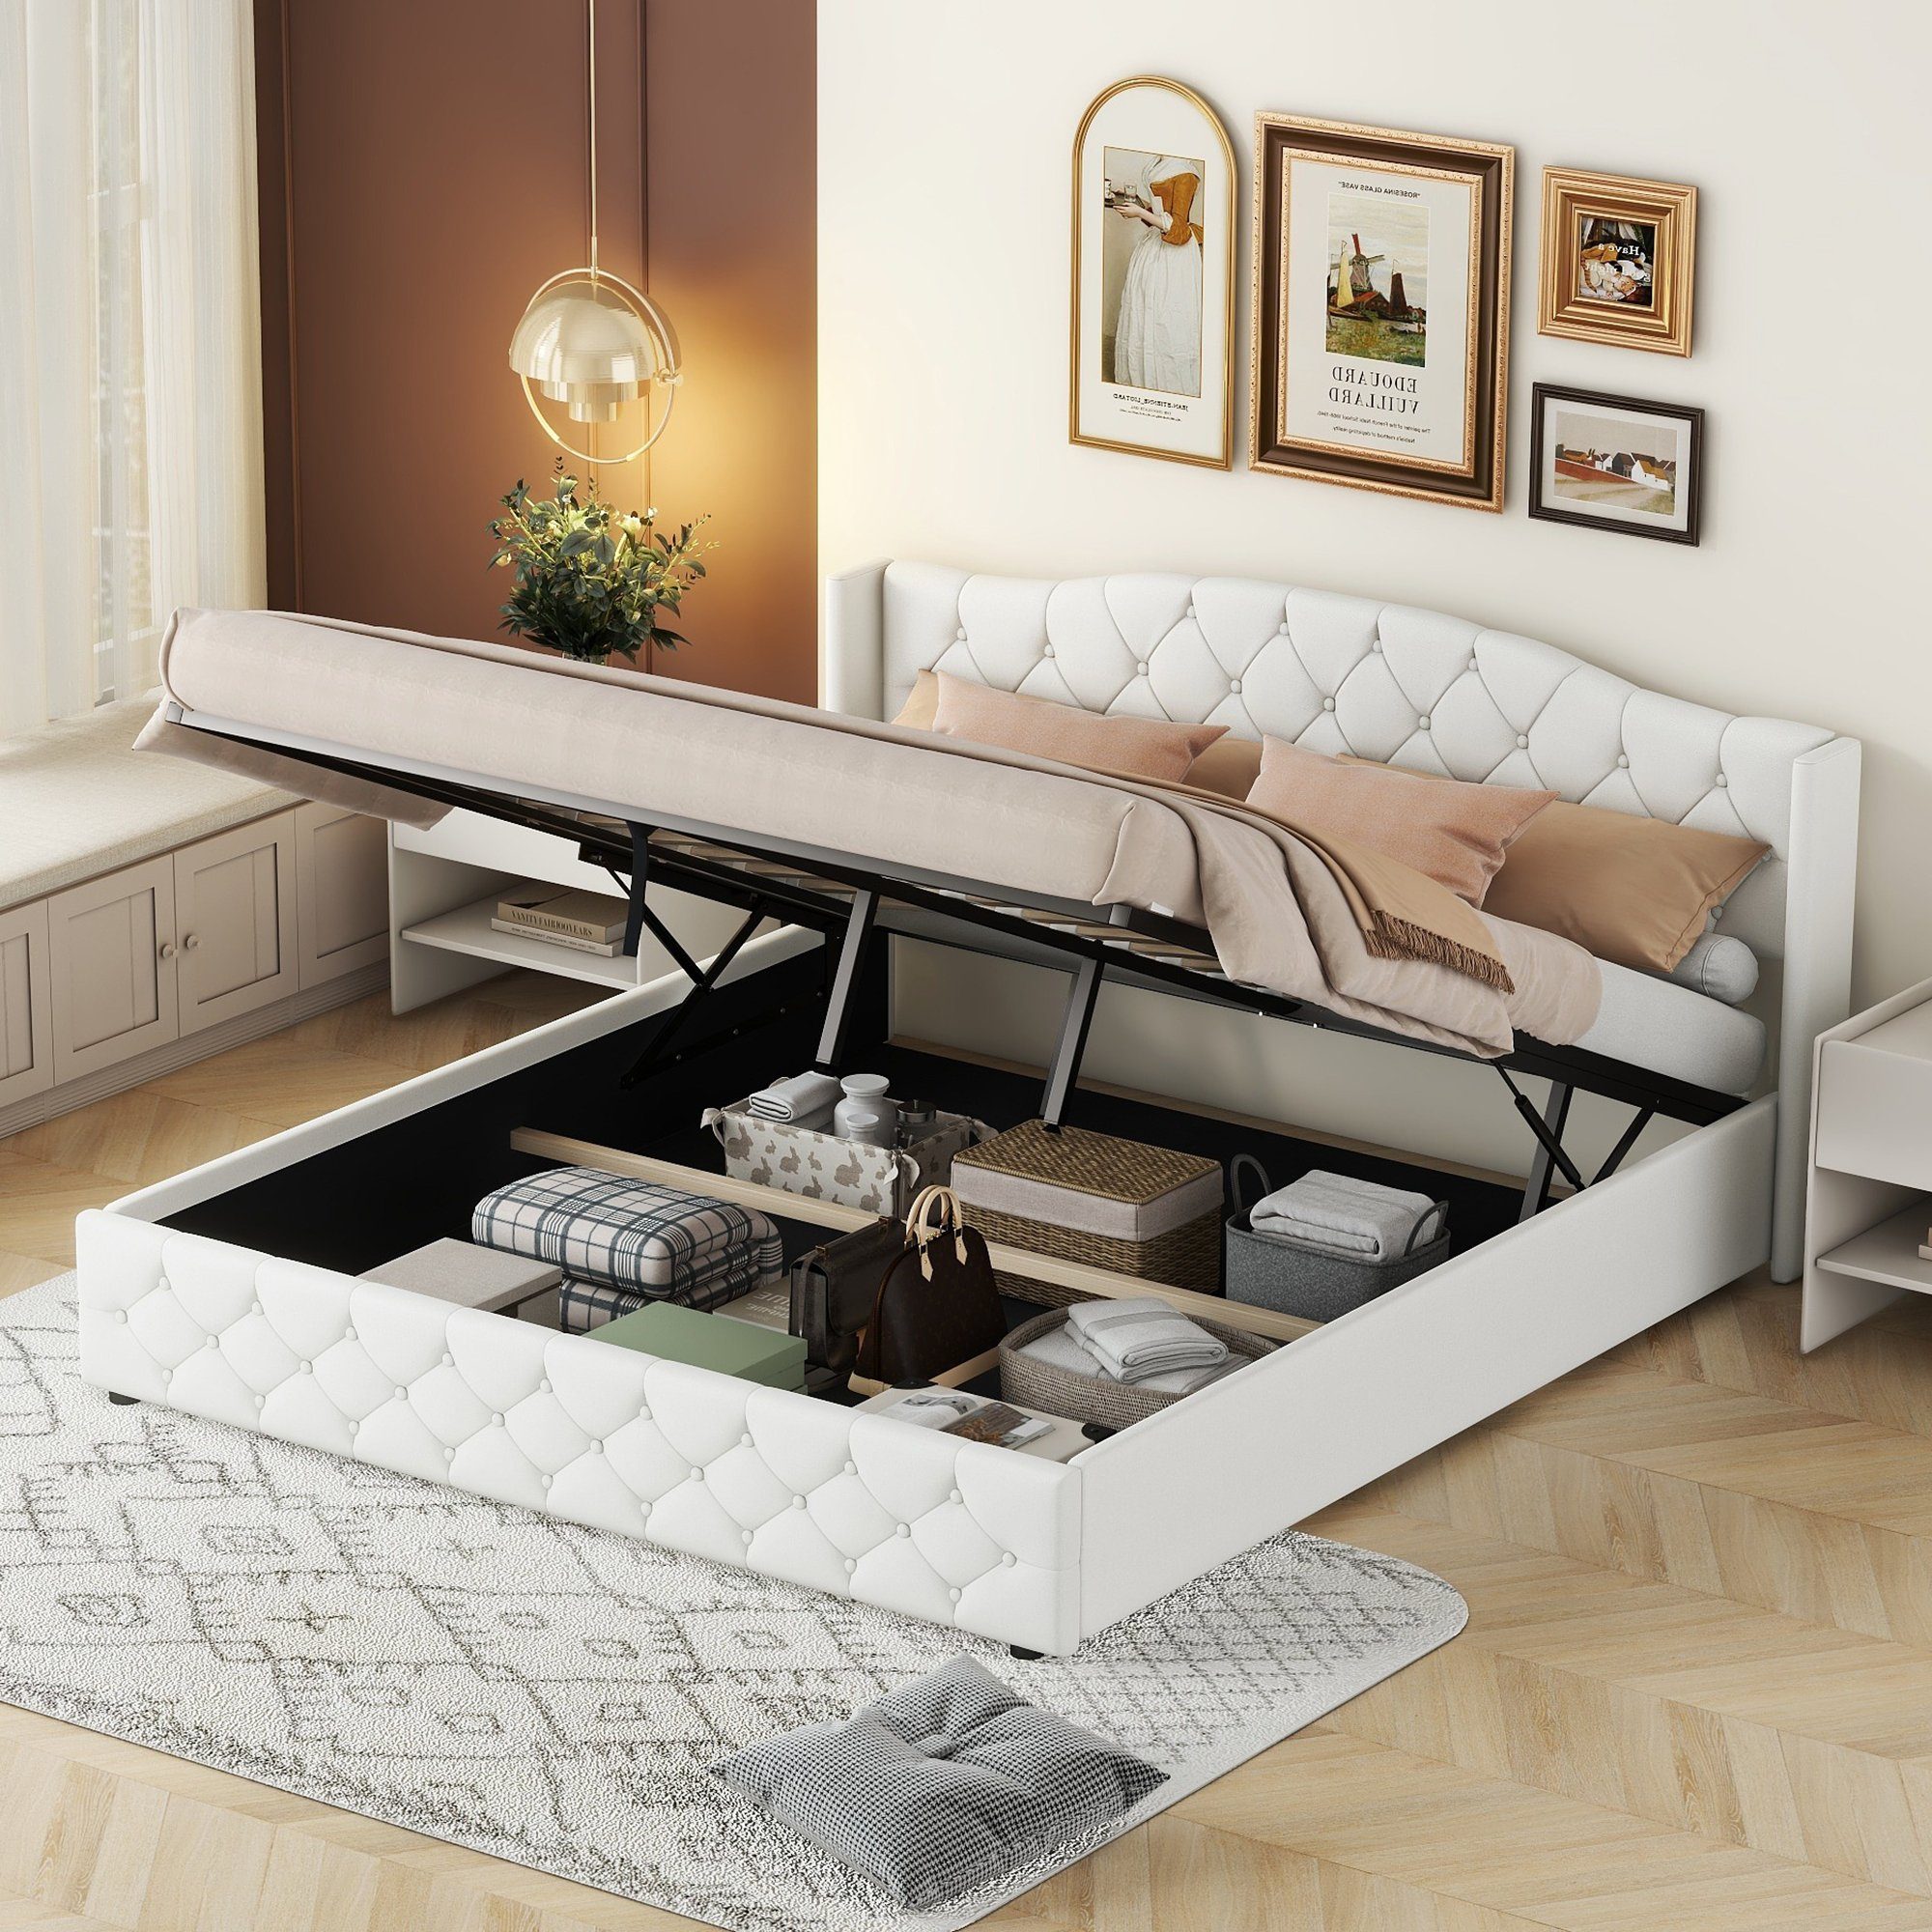 OKWISH Polsterbett Funktionsbett Doppelbett Bett Stauraumbett (180 x 200cm Multifunktionales Flachbett, mit hydraulischer Lagerung), Ohne Matratze Weiß